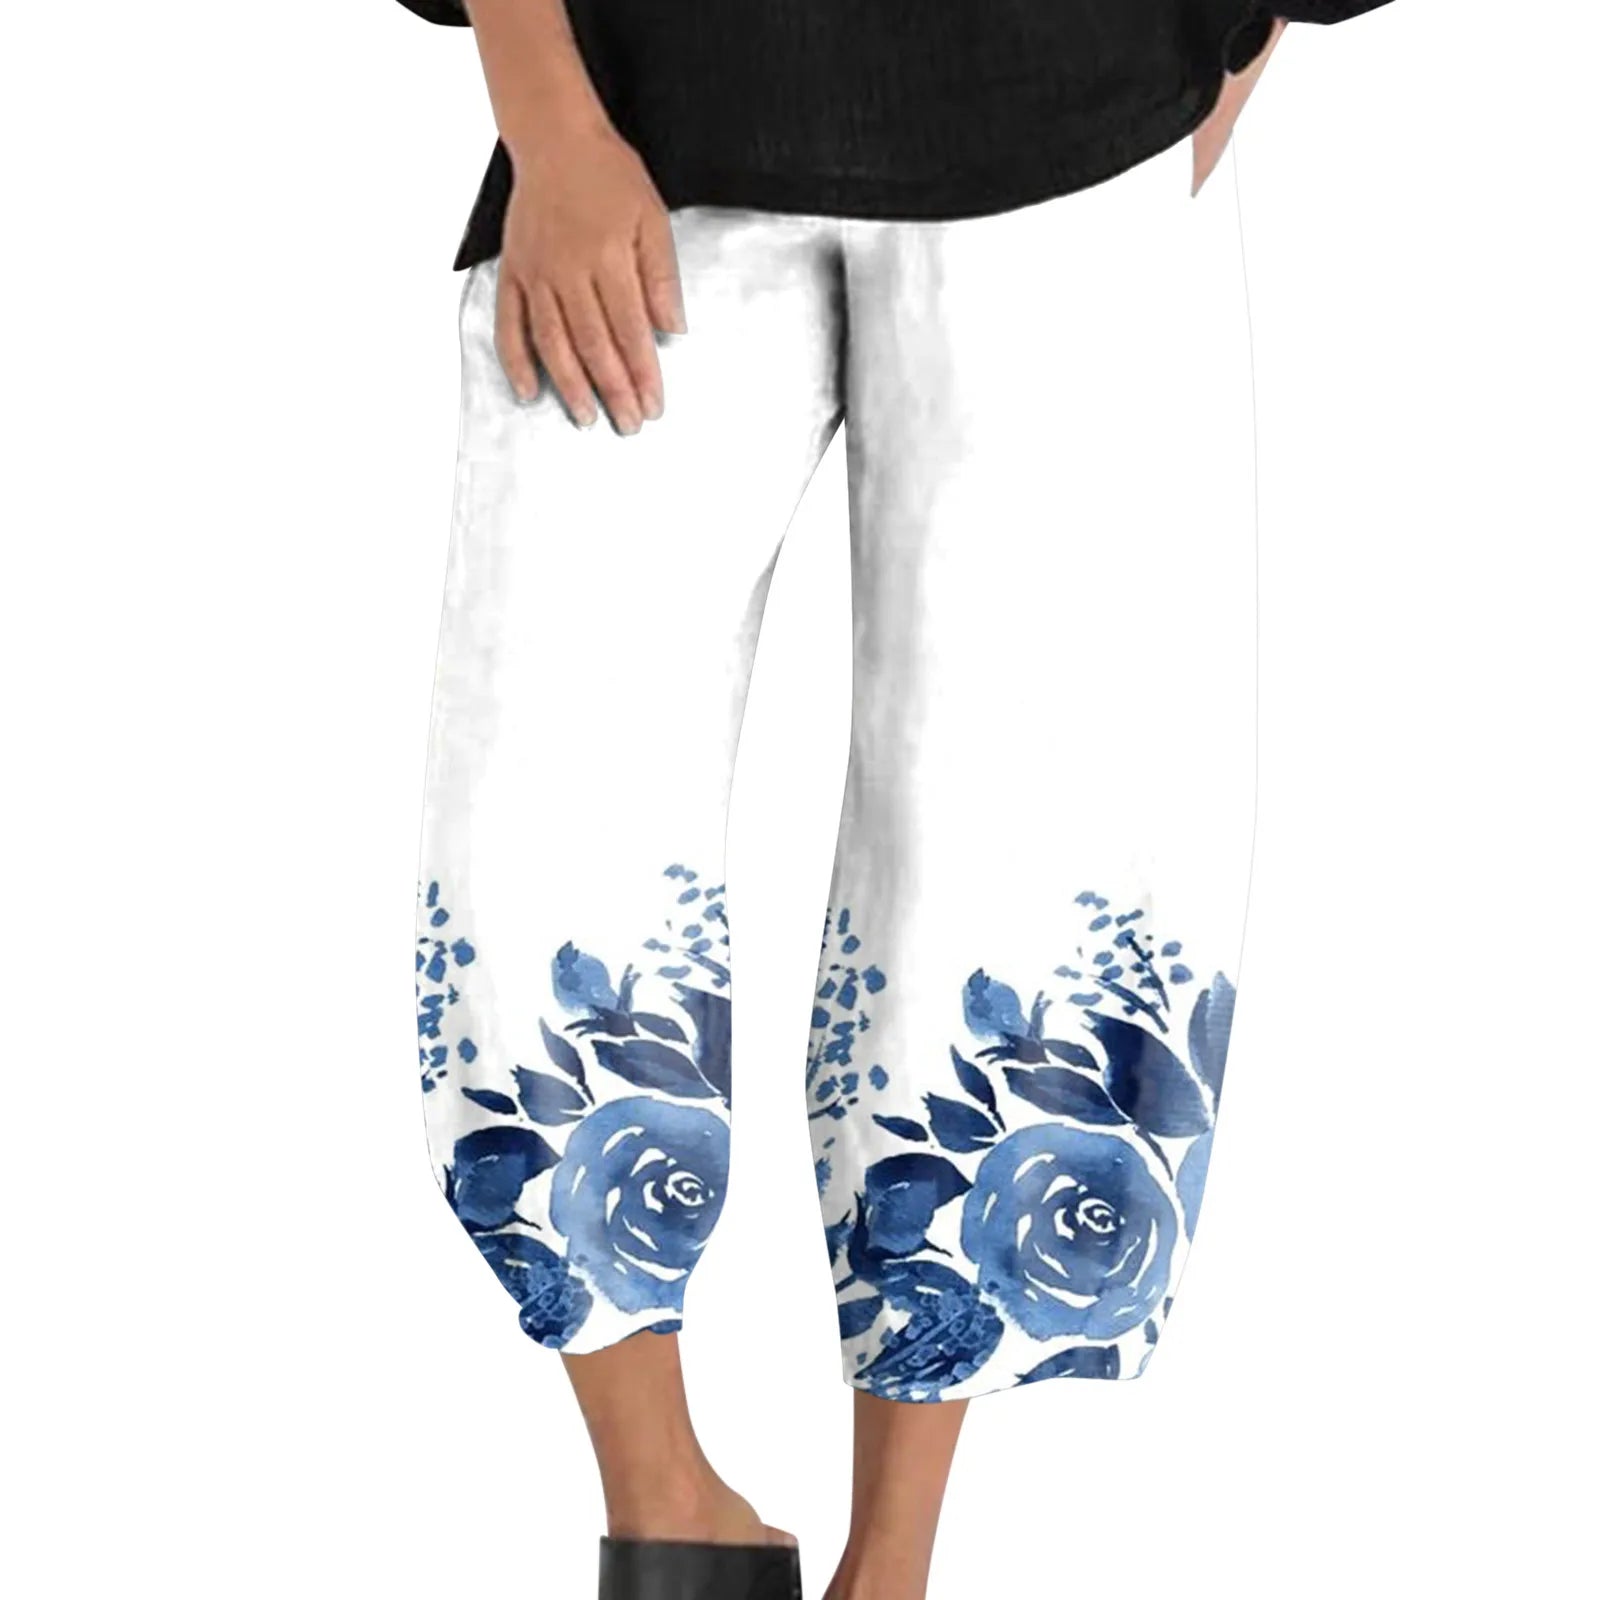 Cotton Linen Elegant Vintage Floral Print Women Pants Elastic Waist